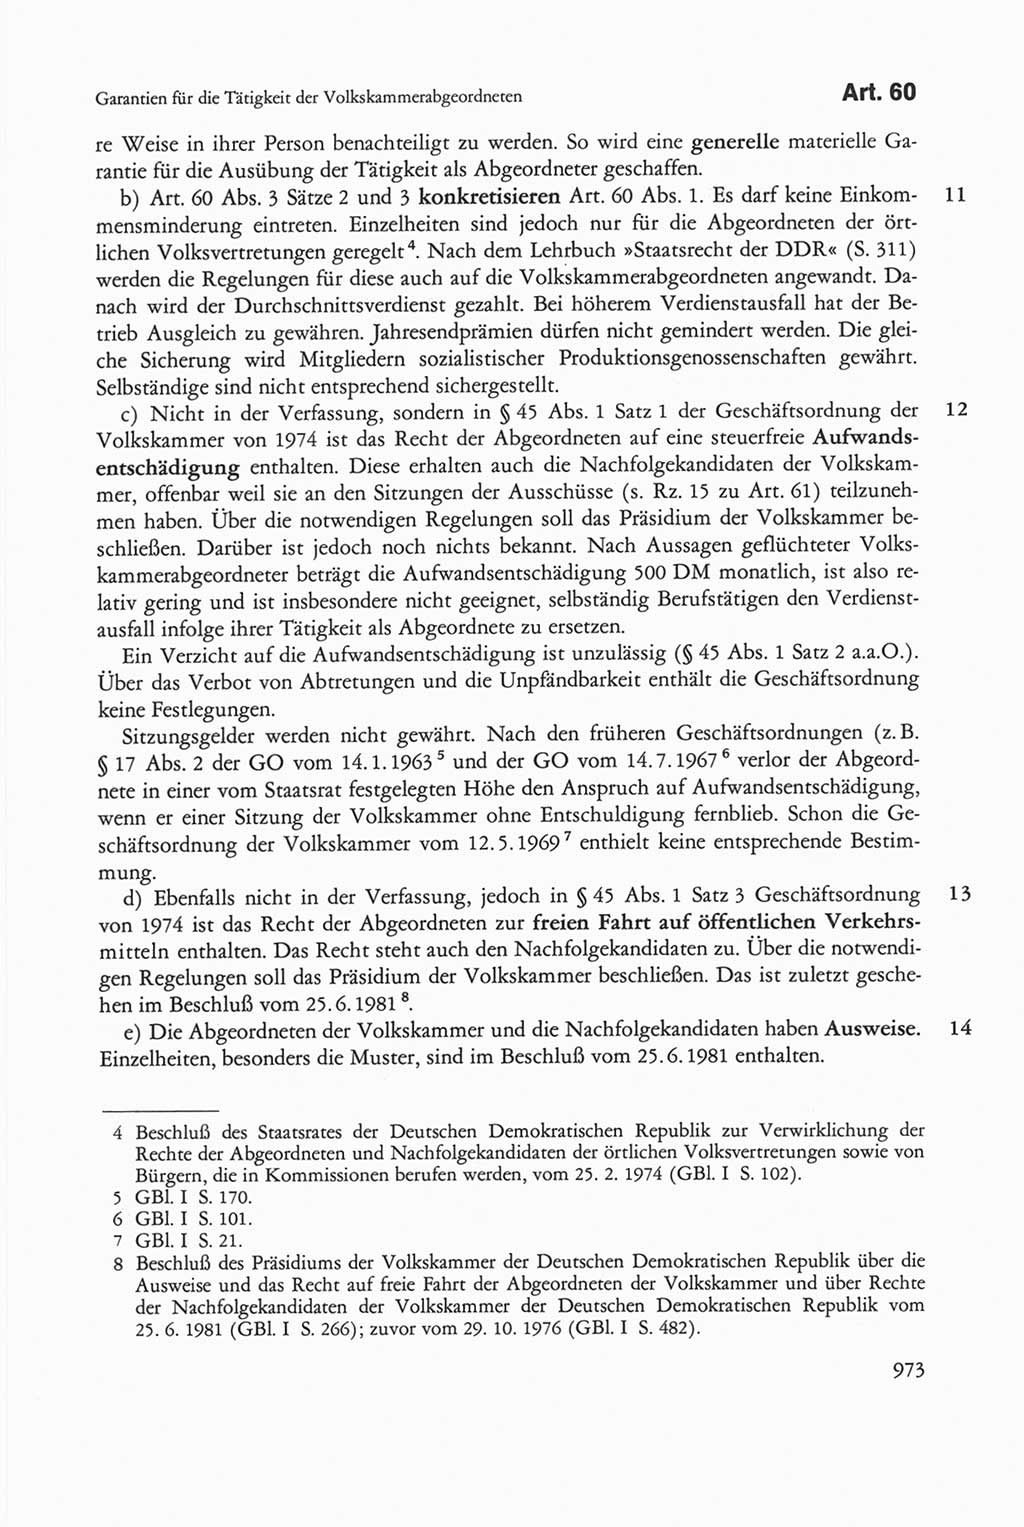 Die sozialistische Verfassung der Deutschen Demokratischen Republik (DDR), Kommentar 1982, Seite 973 (Soz. Verf. DDR Komm. 1982, S. 973)